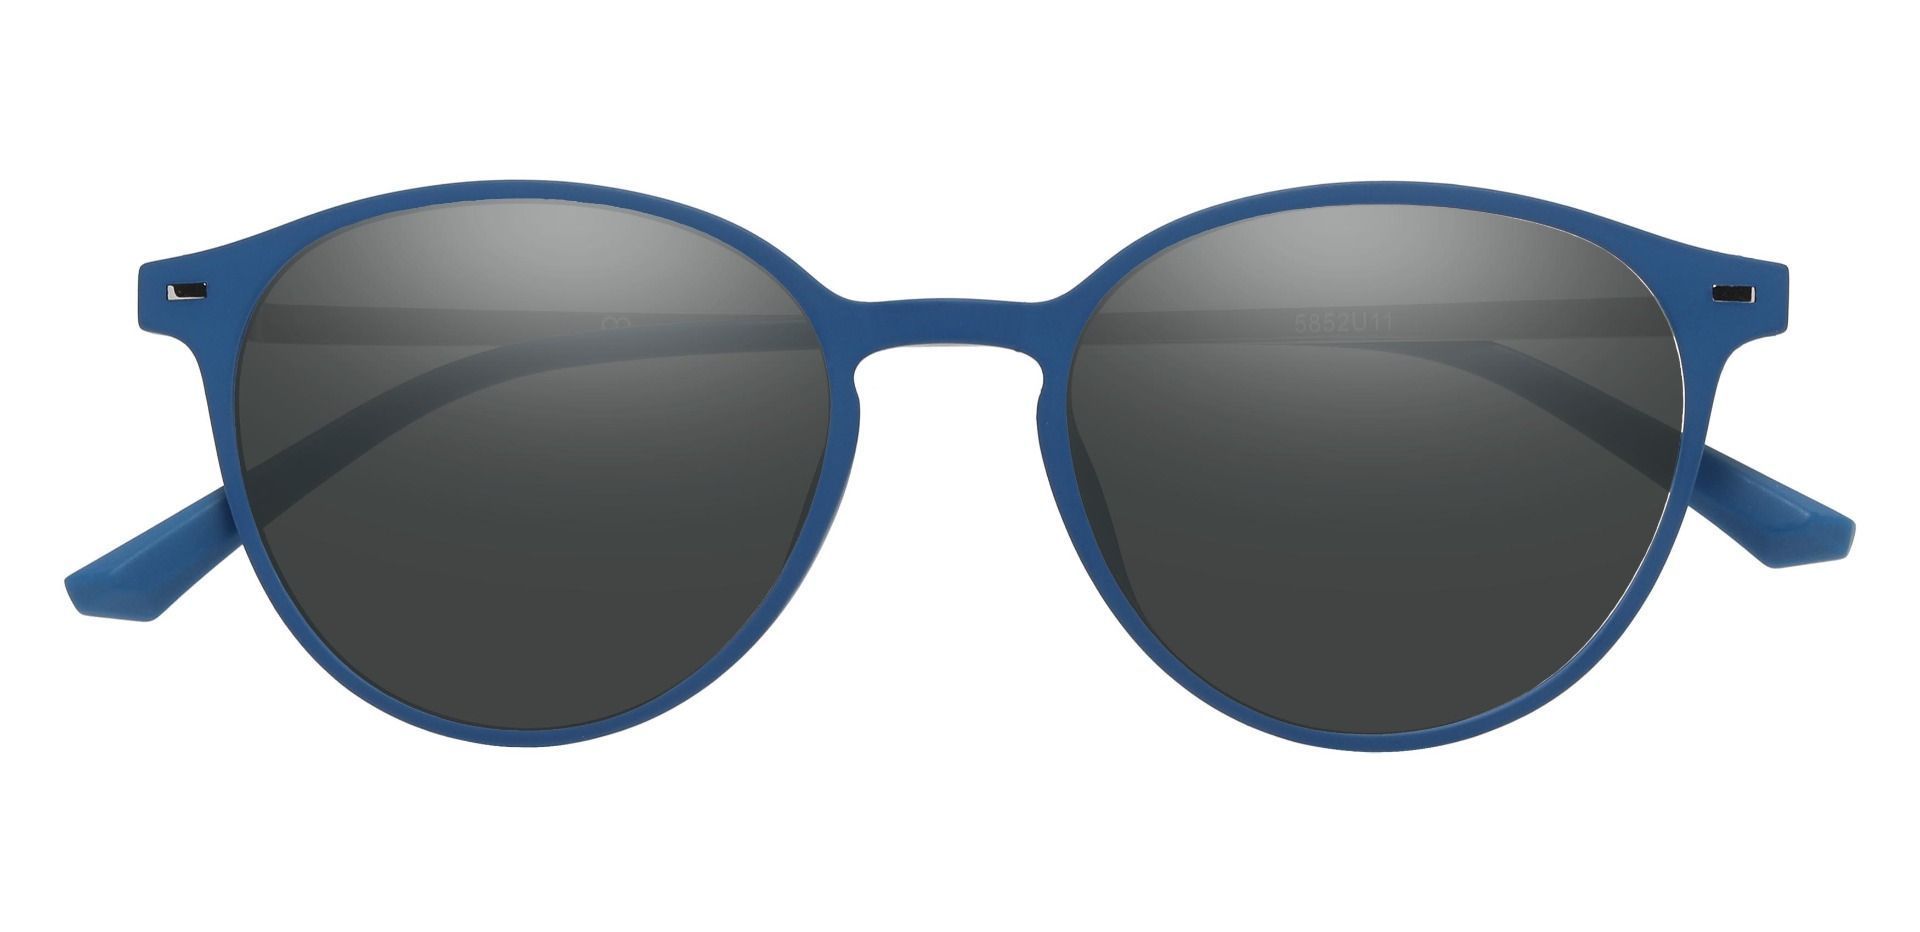 Springer Round Reading Sunglasses - Blue Frame With Gray Lenses